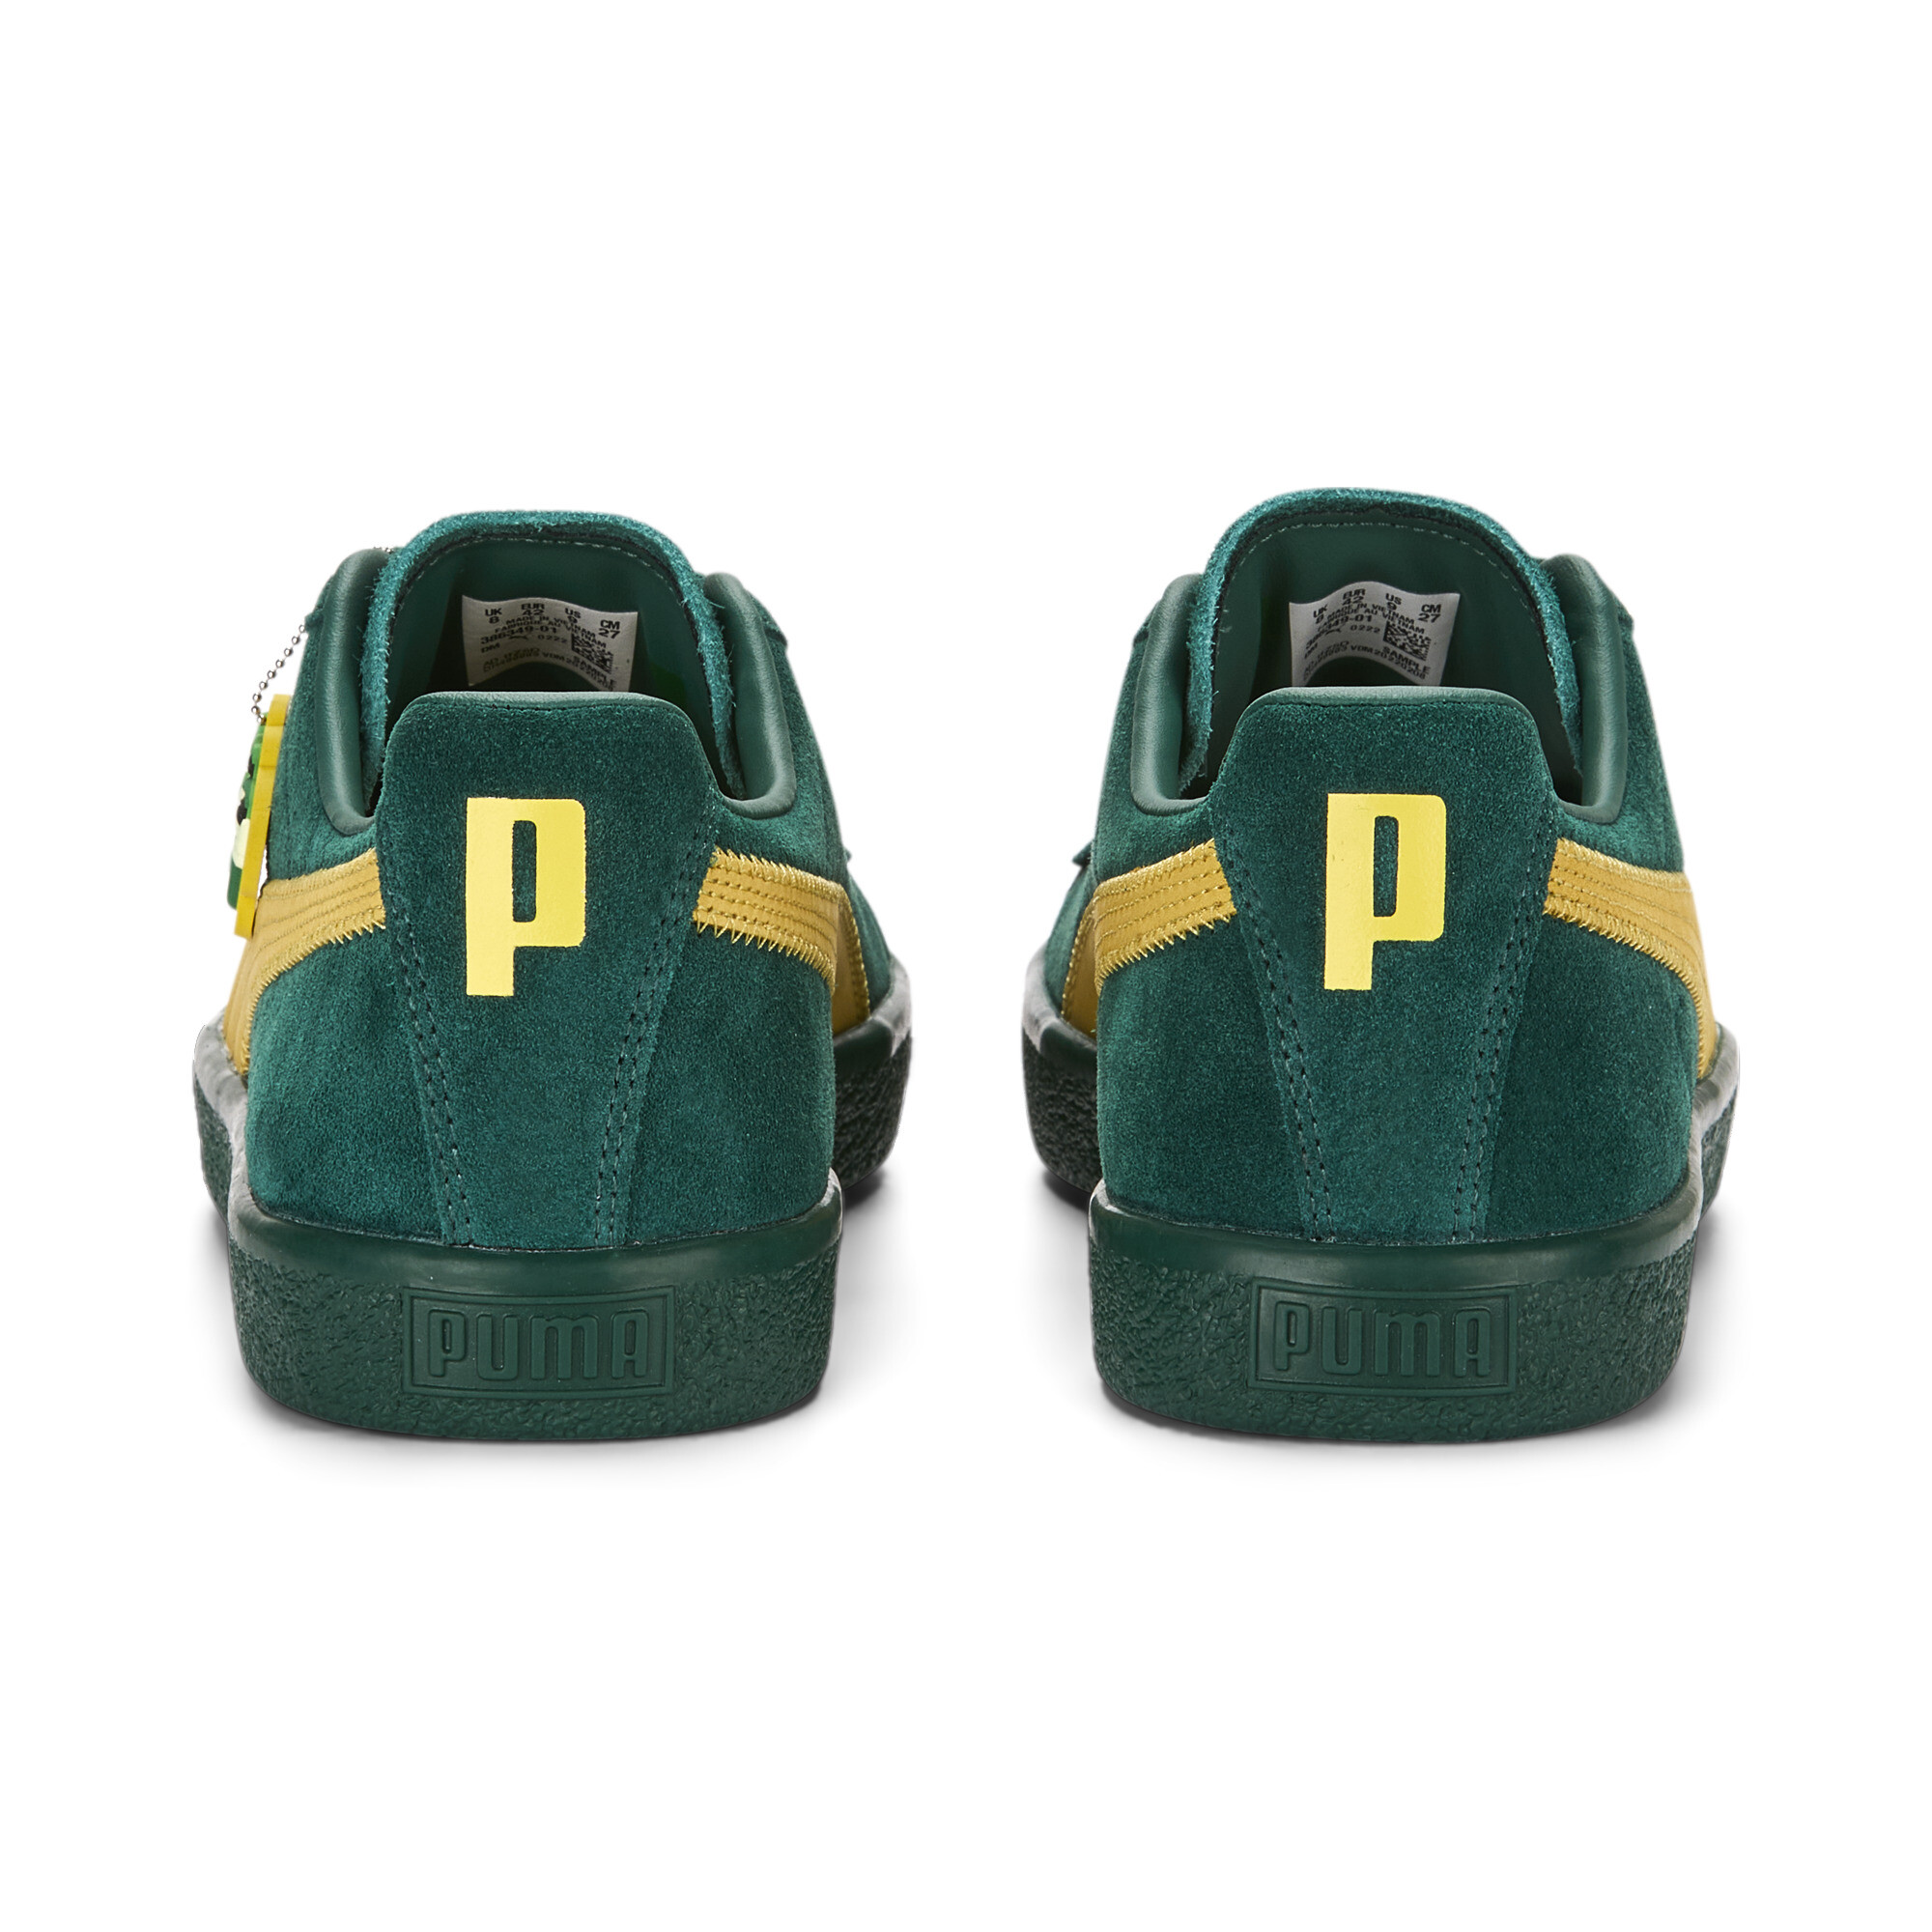 Men's Clyde Super PUMA Sneakers In 40 - Green, Size EU 47